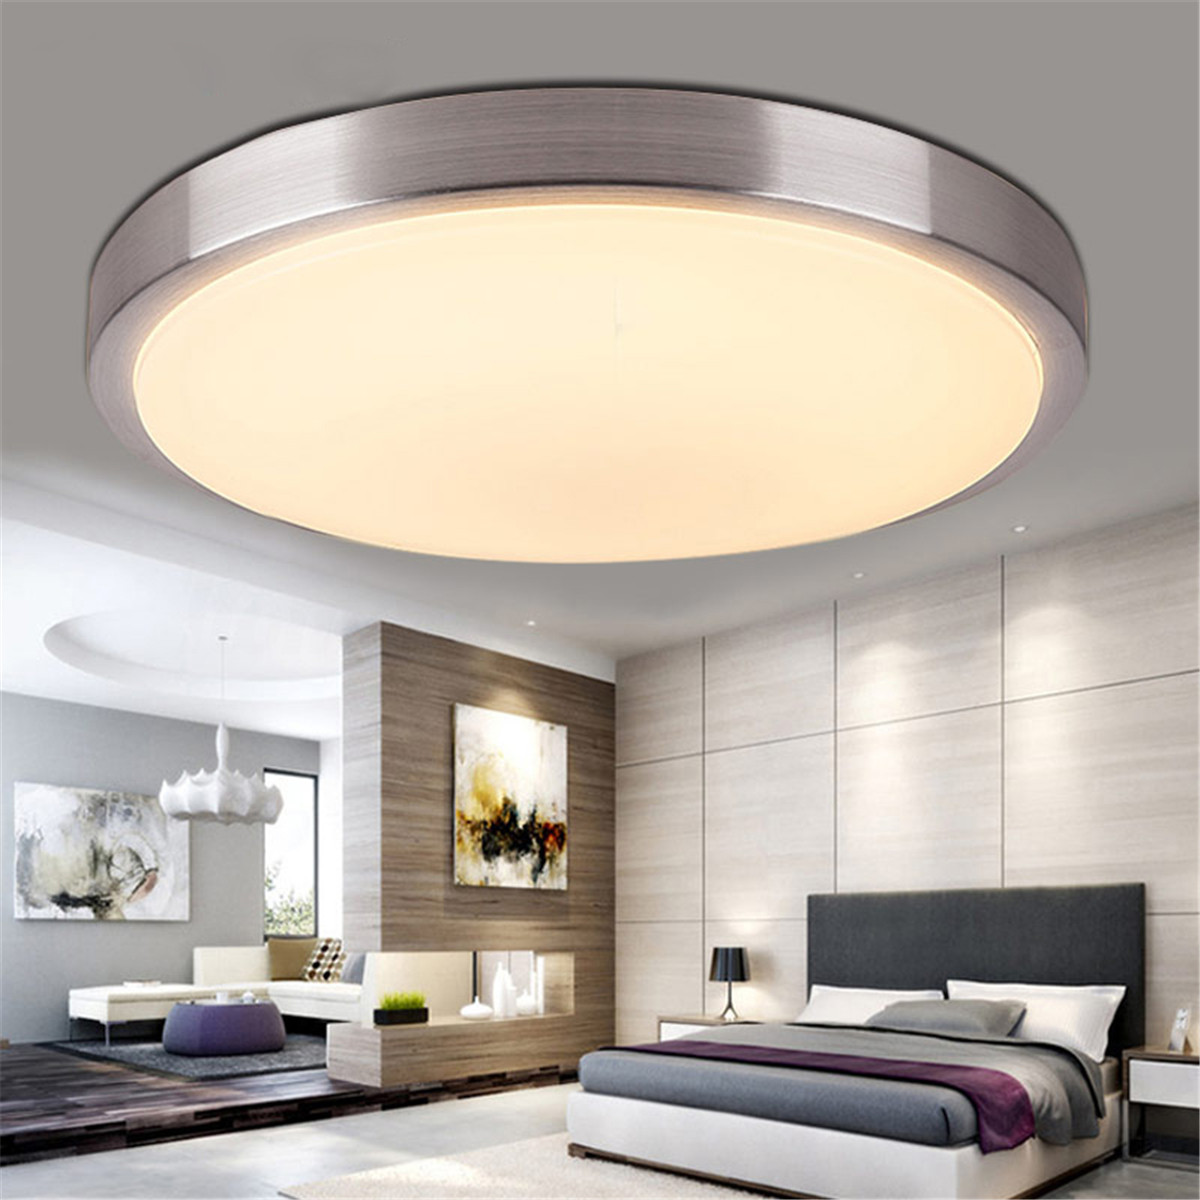 Led Lighting For Living Room
 5 15 36w Modern LED Round Ceiling Light Bedroom Living